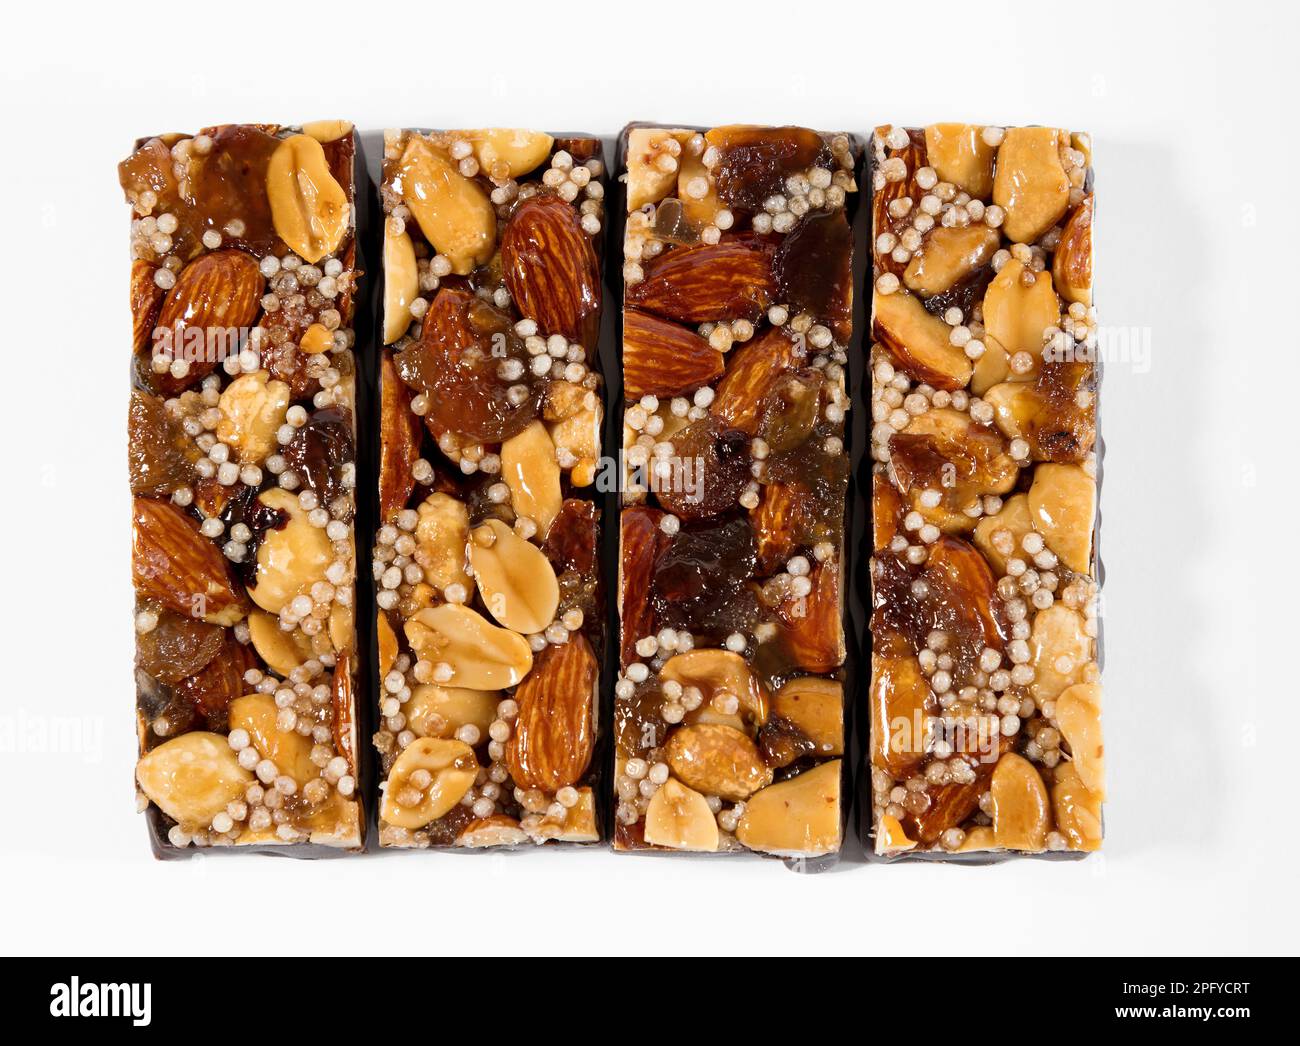 Vista superior de cuatro deliciosas barras de energía con nueces y semillas aisladas sobre fondo blanco Foto de stock